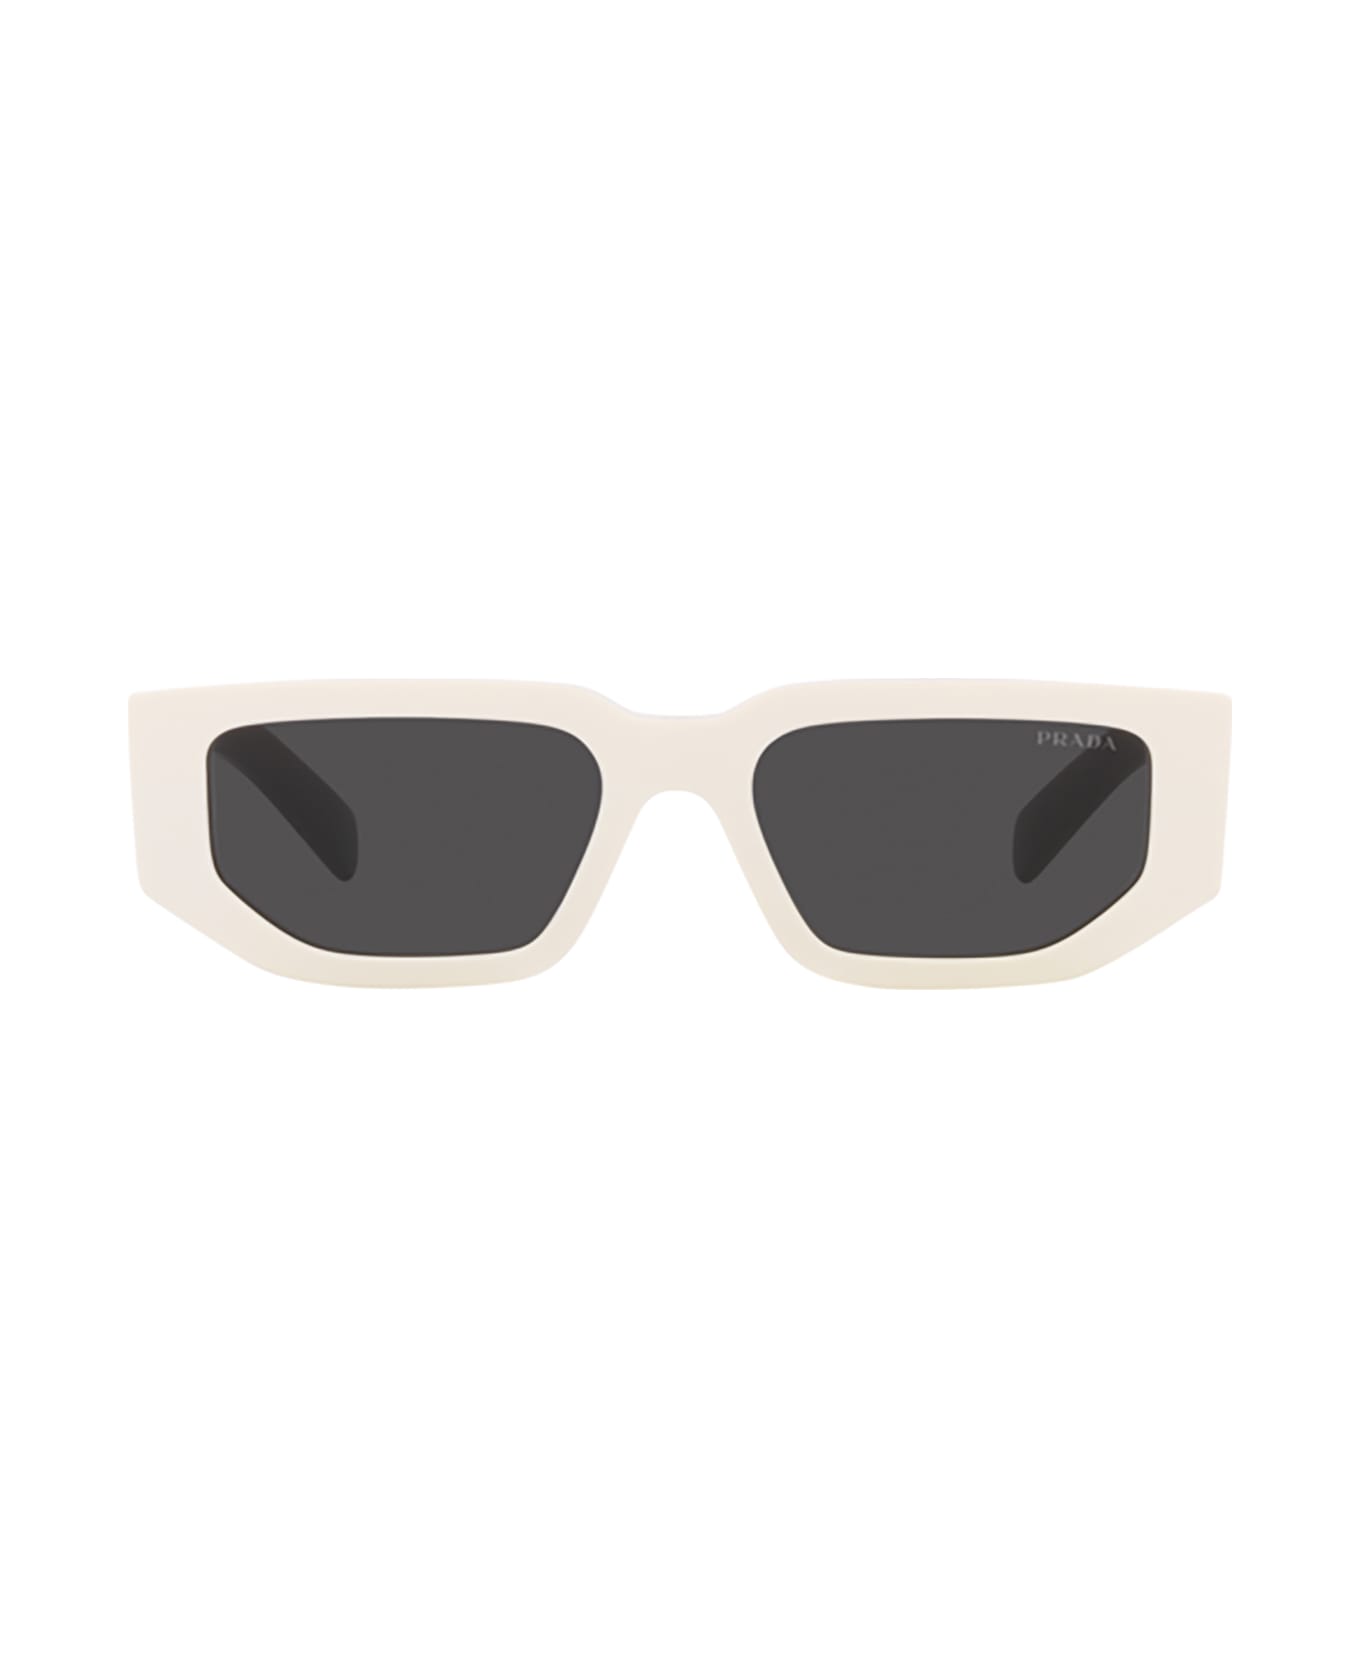 Prada Eyewear Pr 09zs Talc Sunglasses - Talc